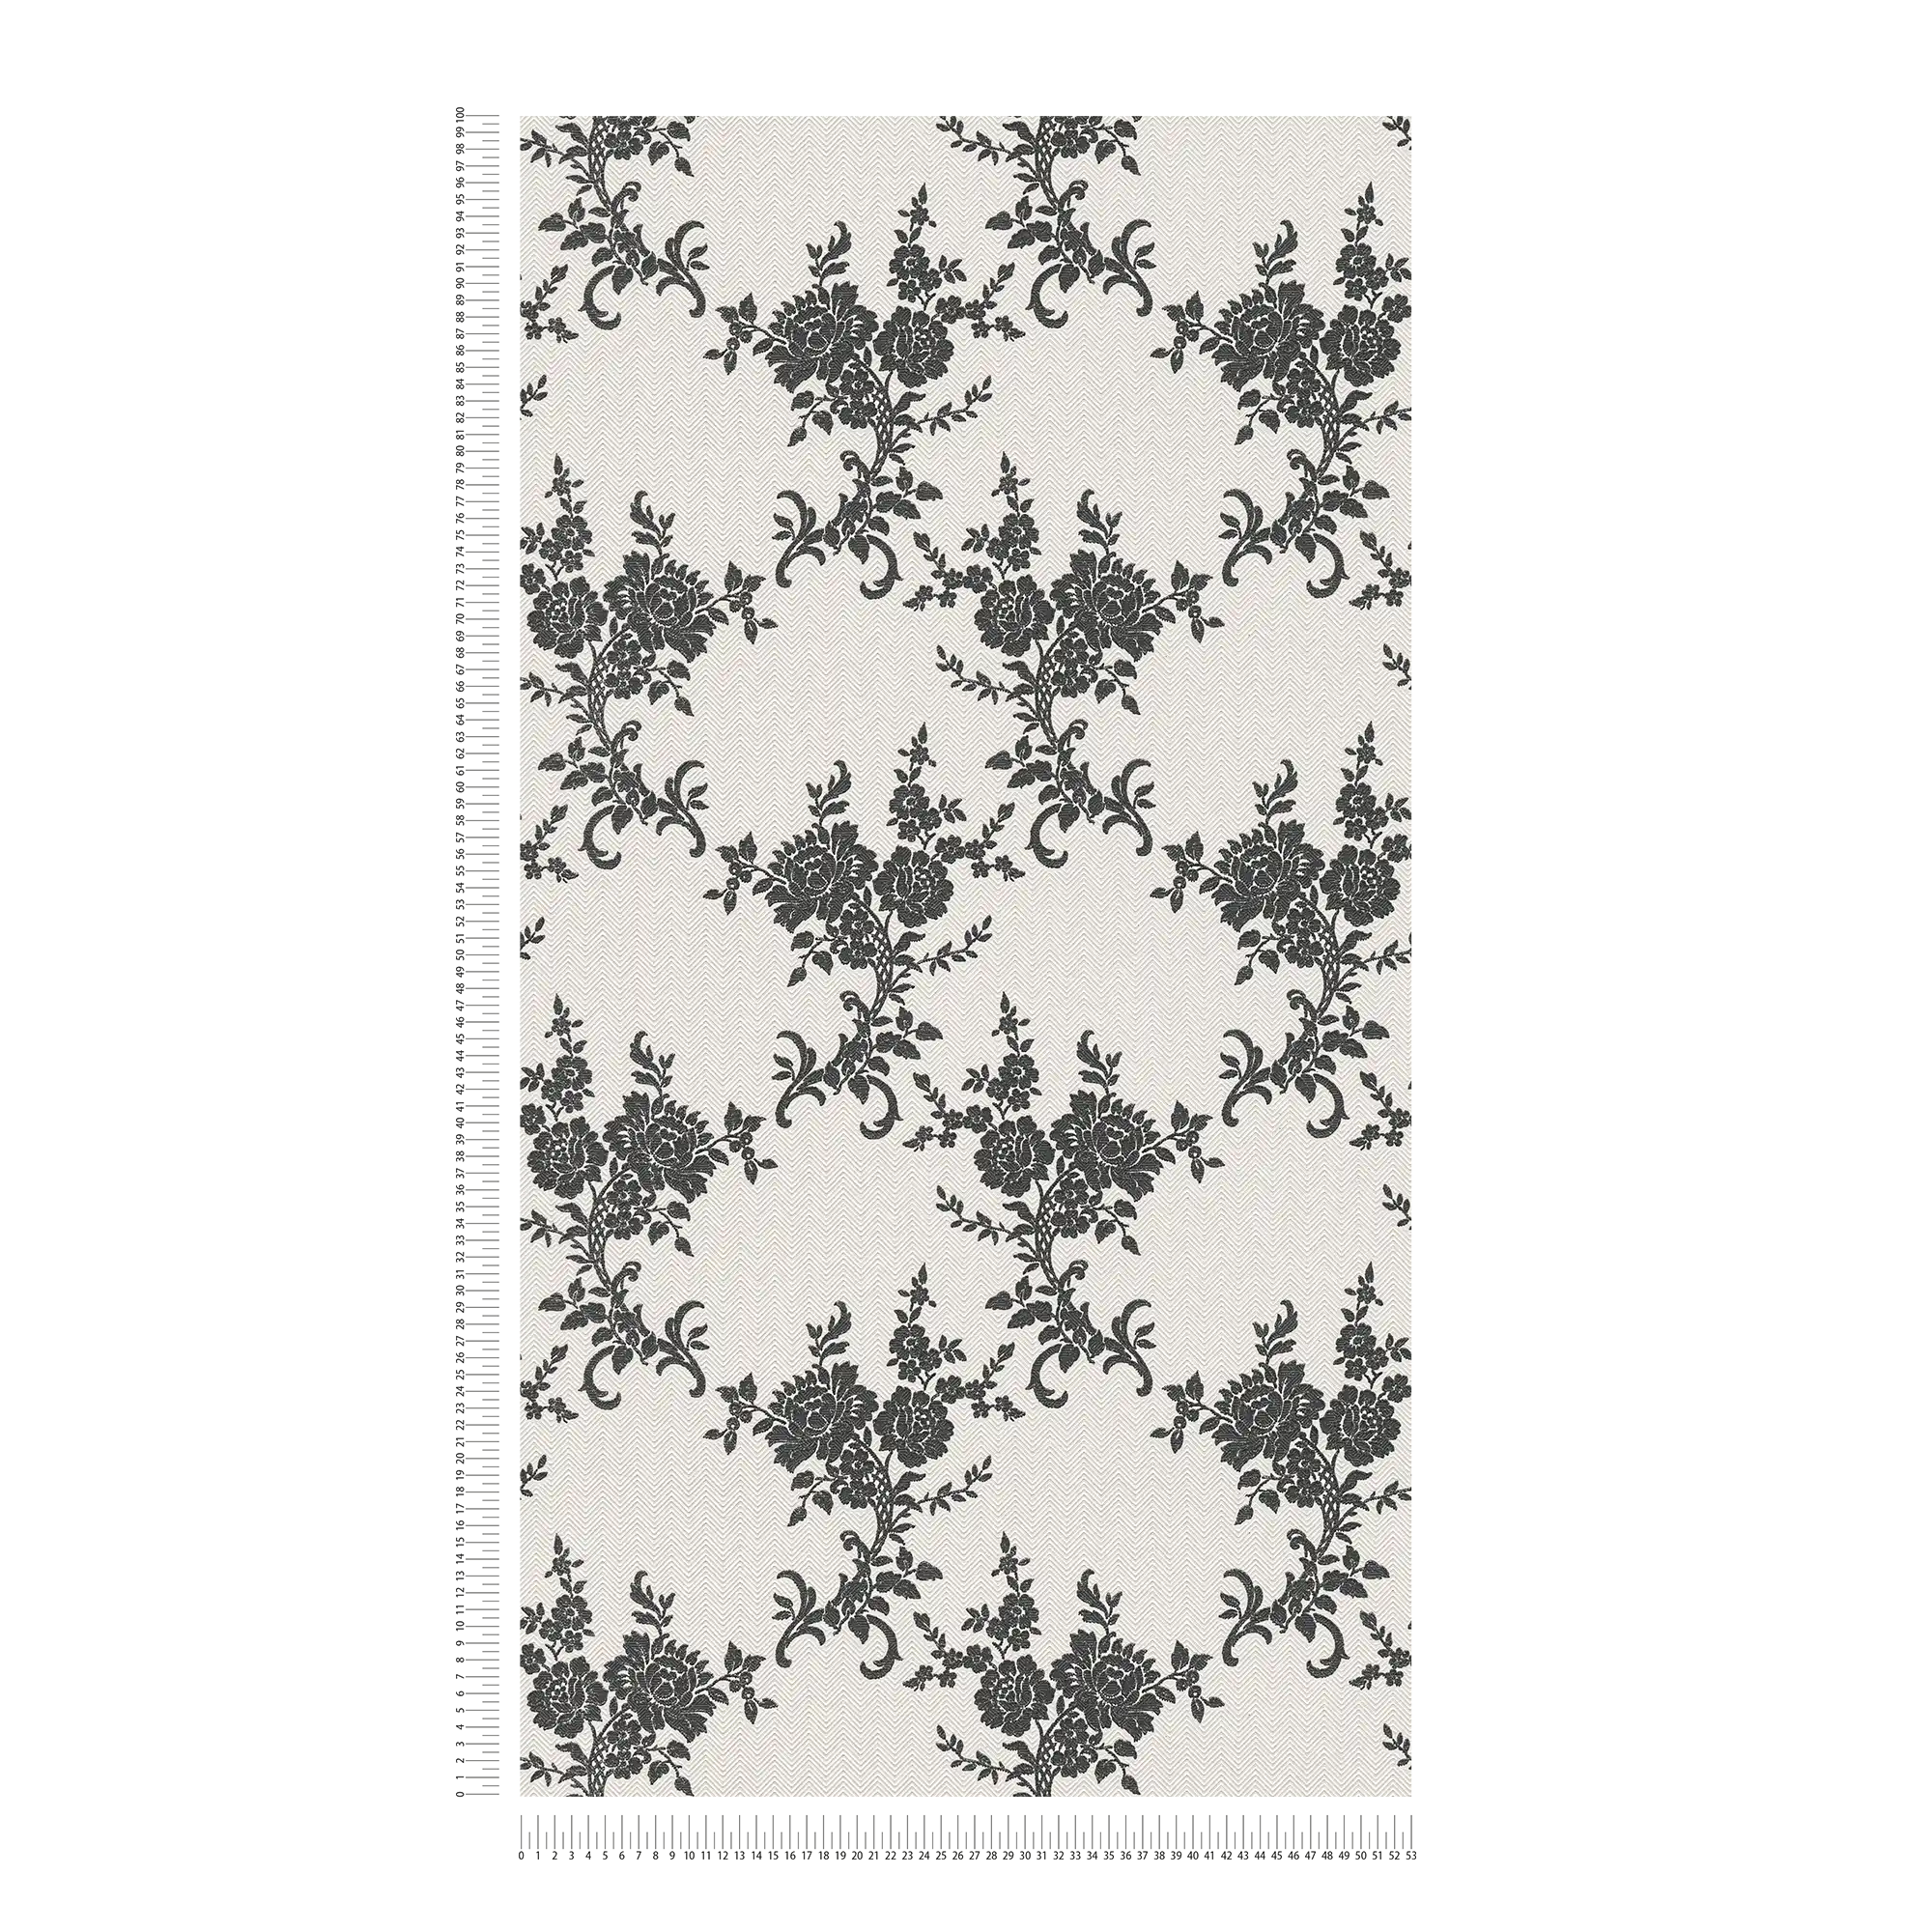             Wallpaper floral ornaments & chevron pattern - black, white, silver
        